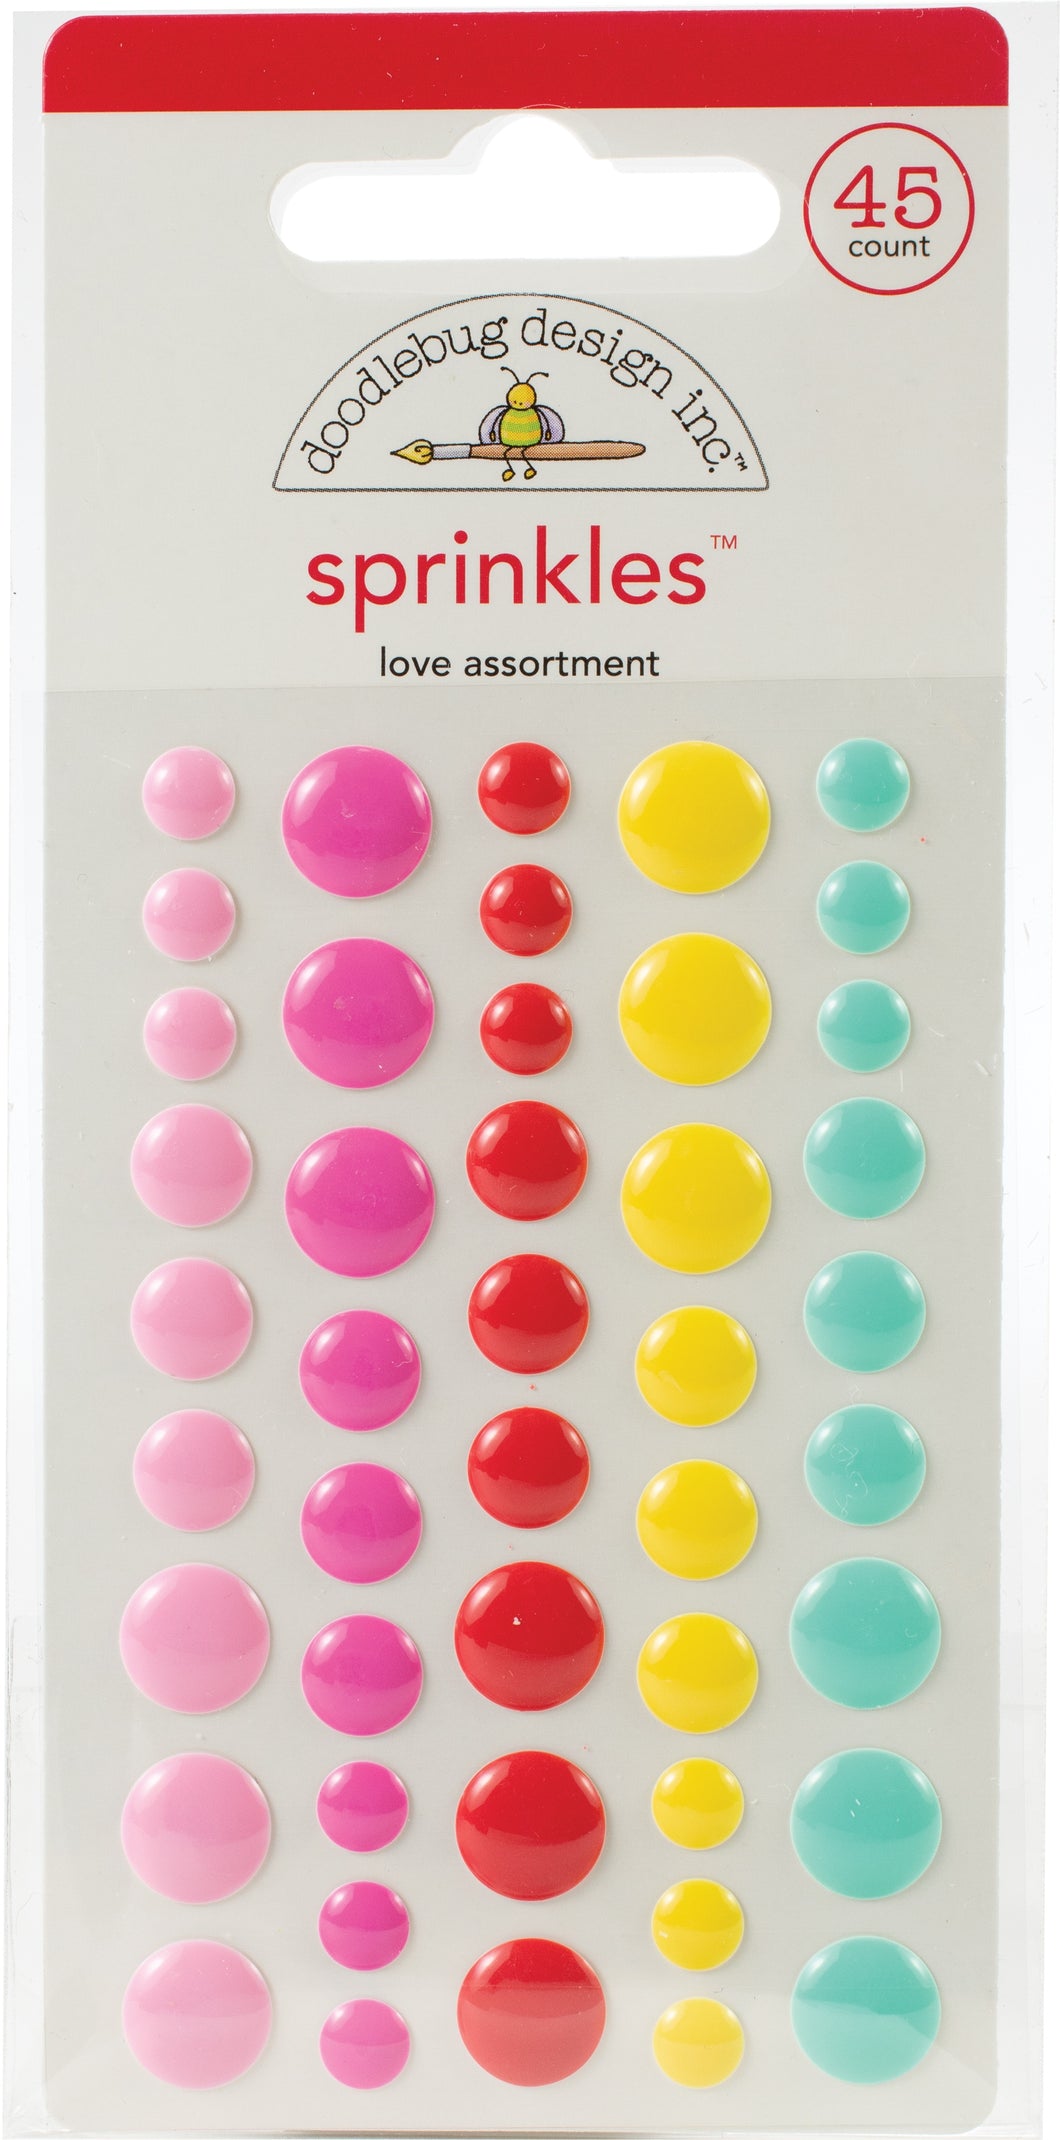 Doodlebug Design: Sprinkles - Love Assortment